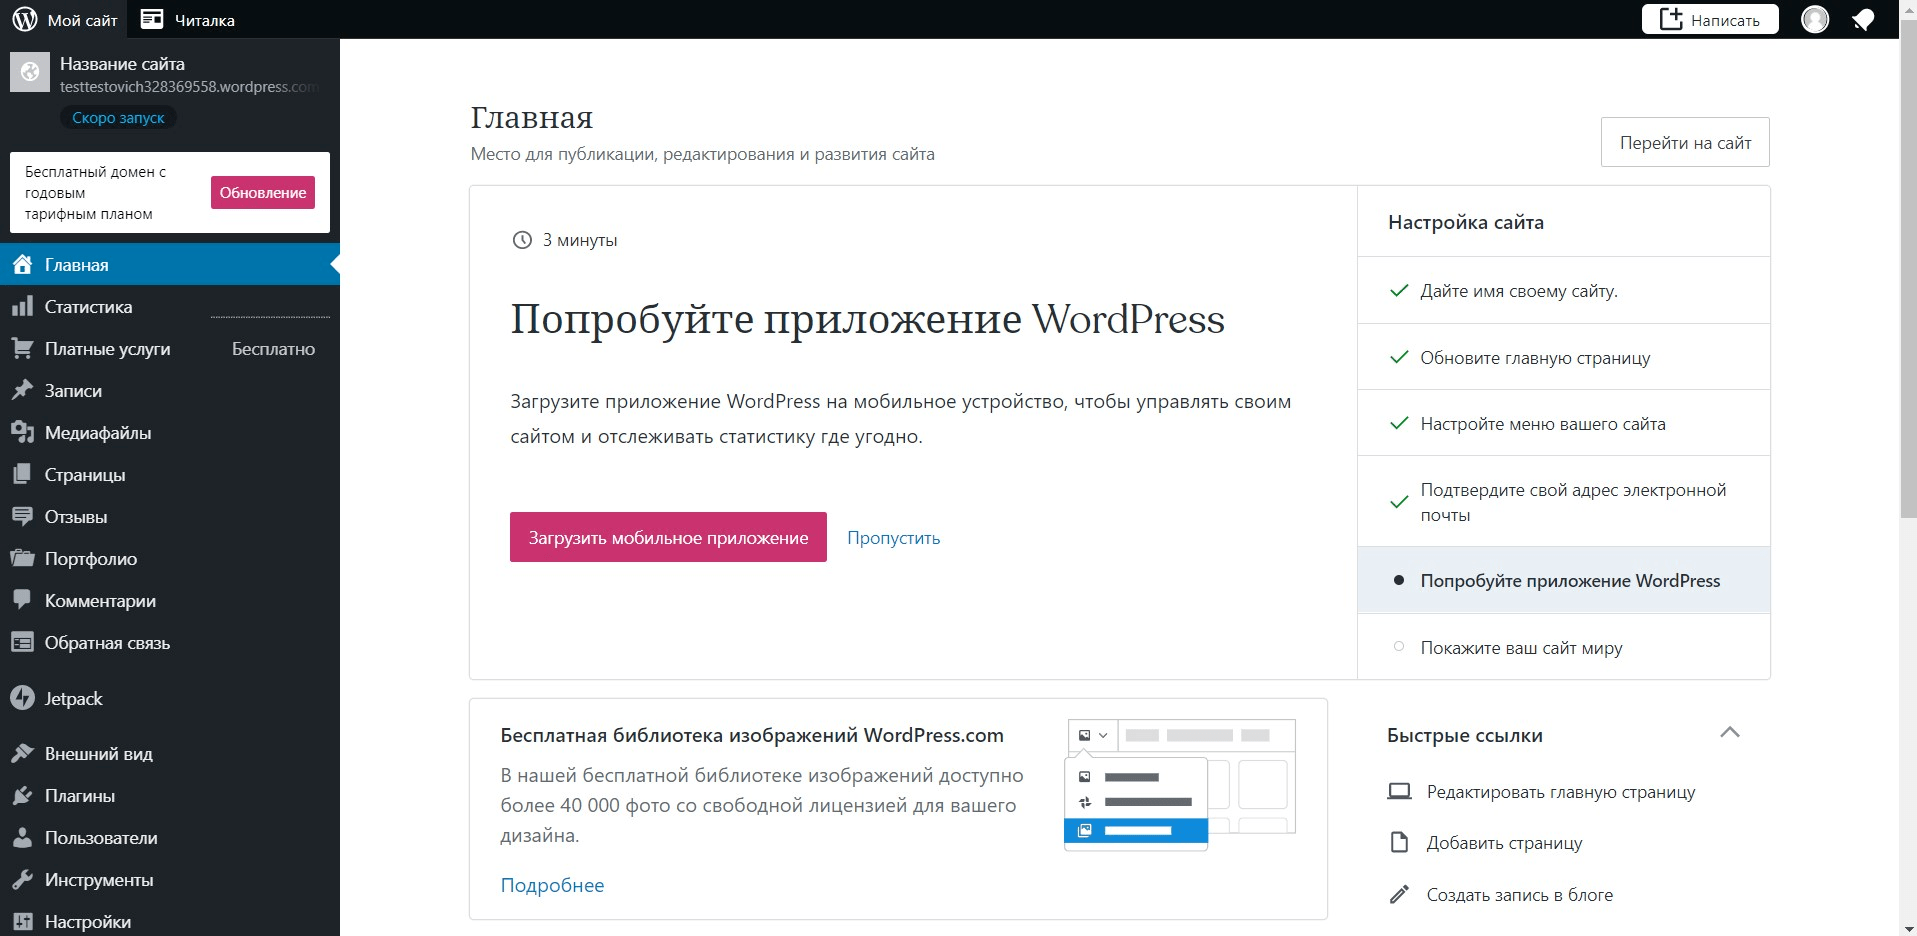 Структура сервиса WordPress